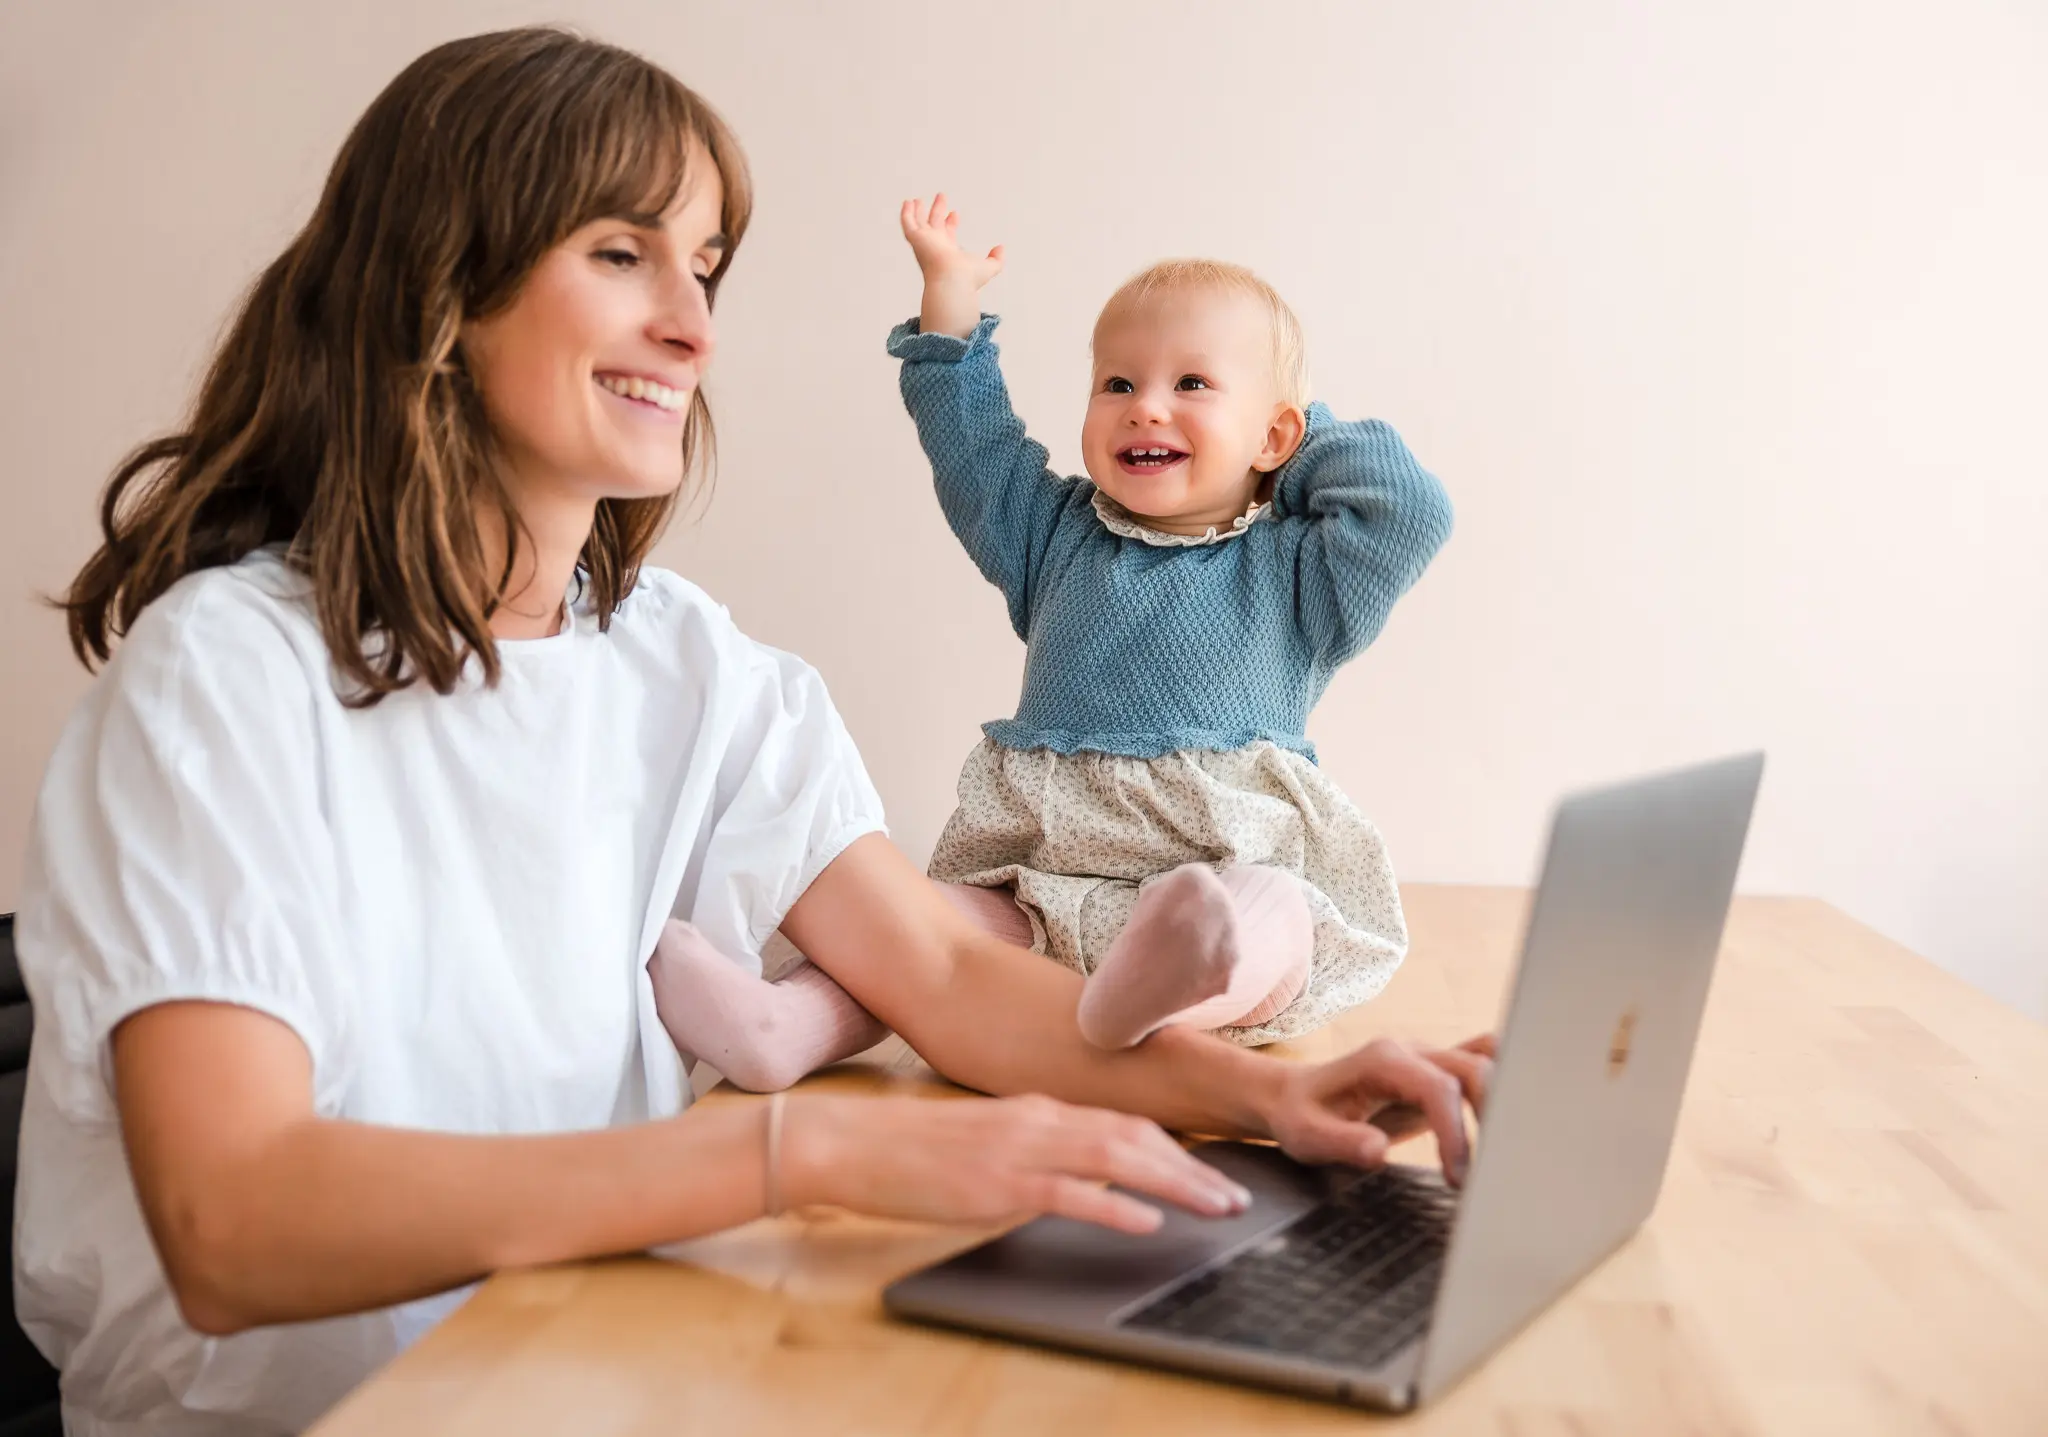 Eine froehliche Frau sitzt zusammen mit ihrem lachenden Kind vor dem PC.